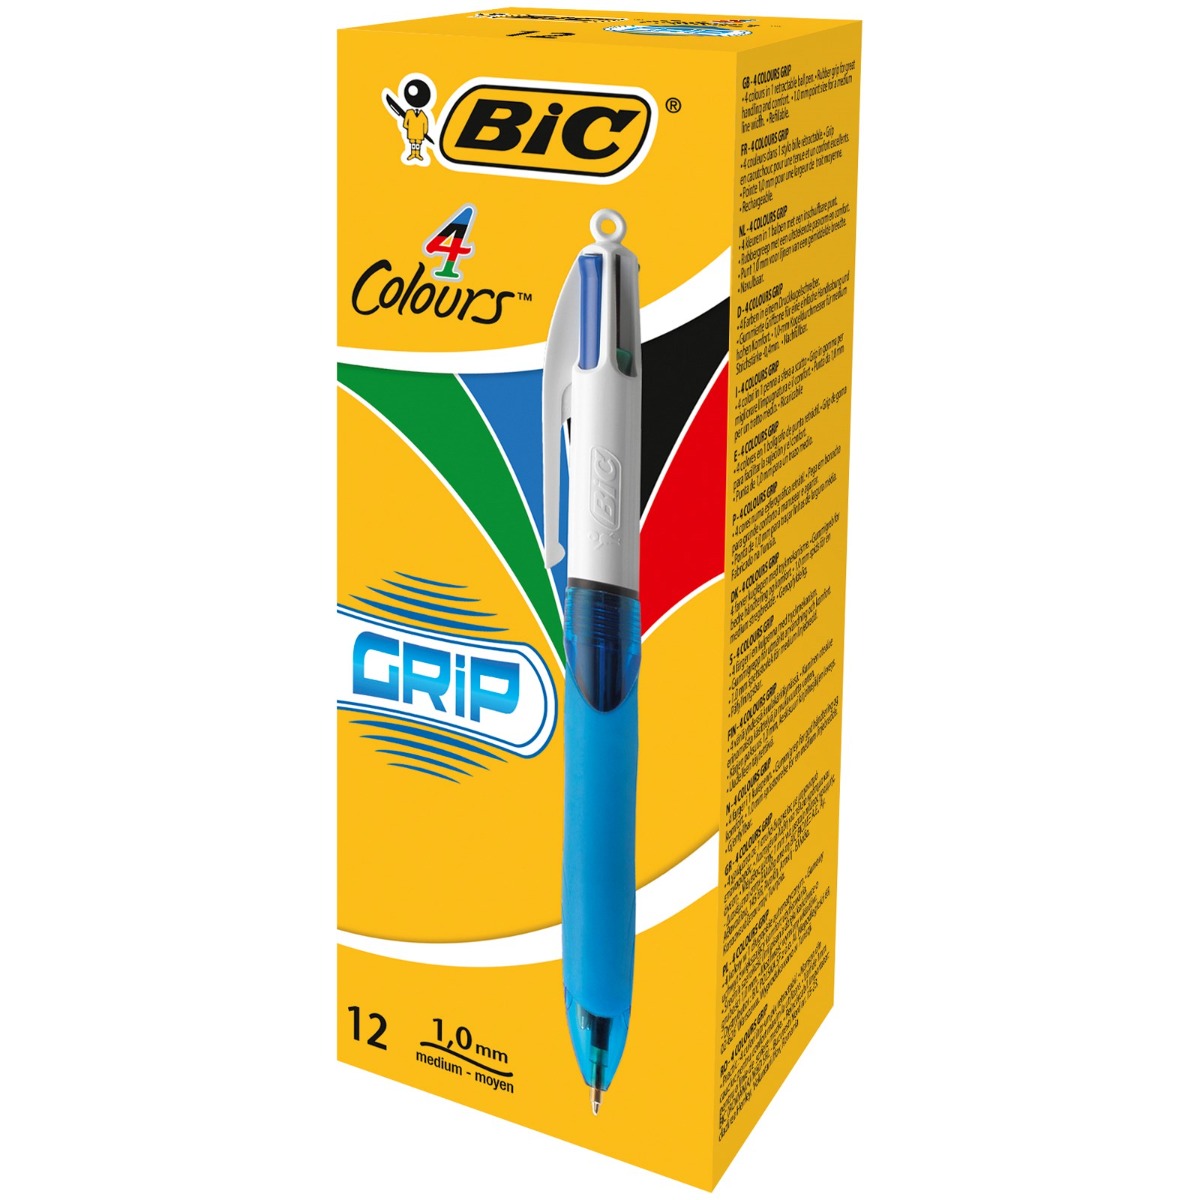 Billede af BIC Grip 4 Colors, kuglepen med 4 farver